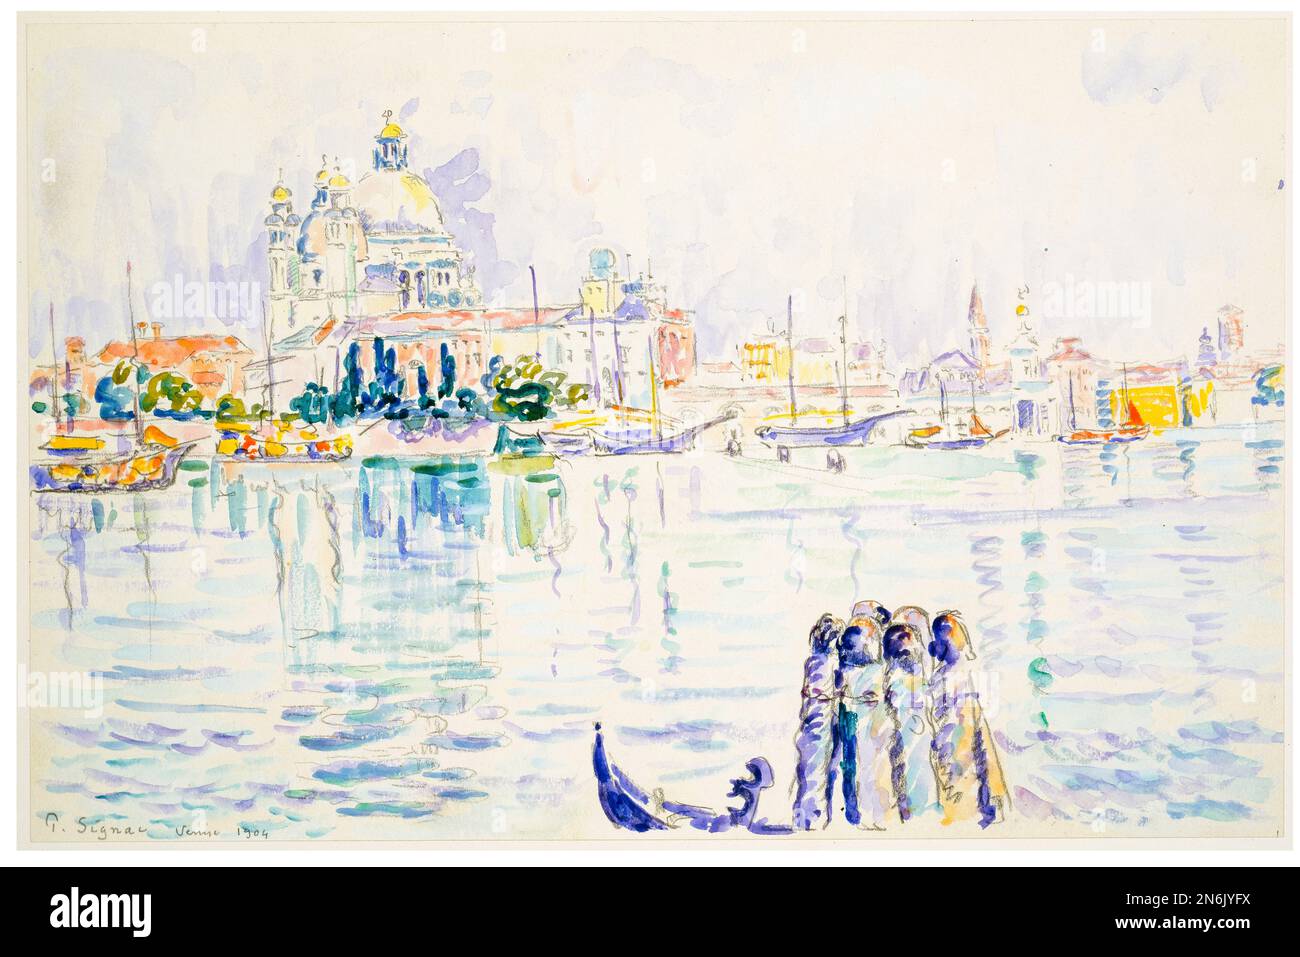 Venise : Grand Canal, peinture de paysage en aquarelle et crayon par Paul Signac, 1904 Banque D'Images